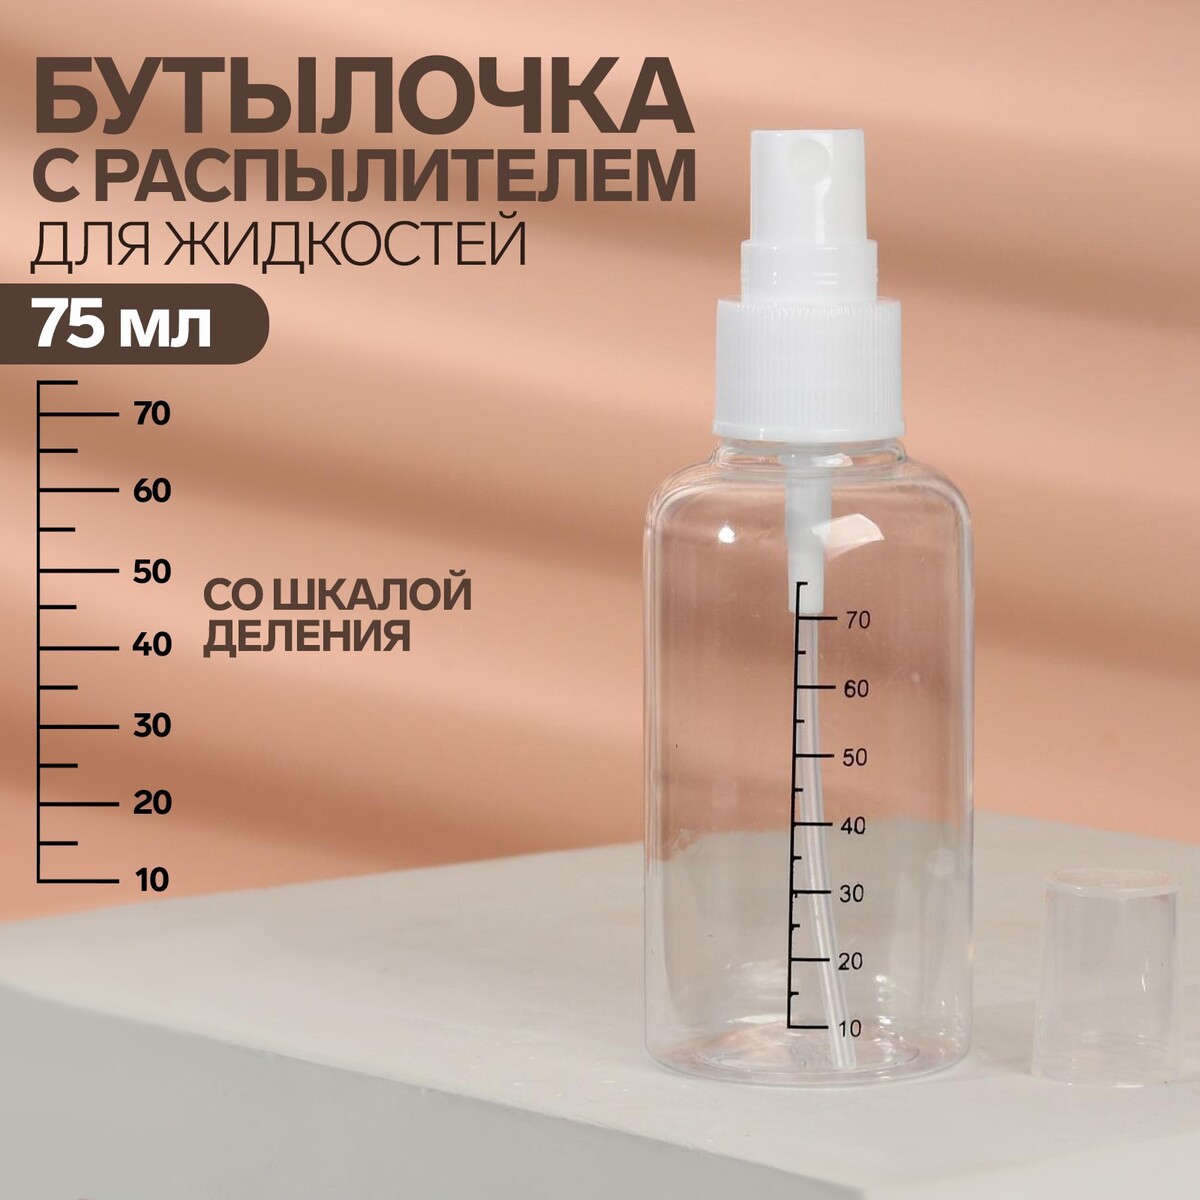 Бутылочка для хранения, с распылителем, со шкалой деления, 75 мл, цвет белый/прозрачный, ONLITOP